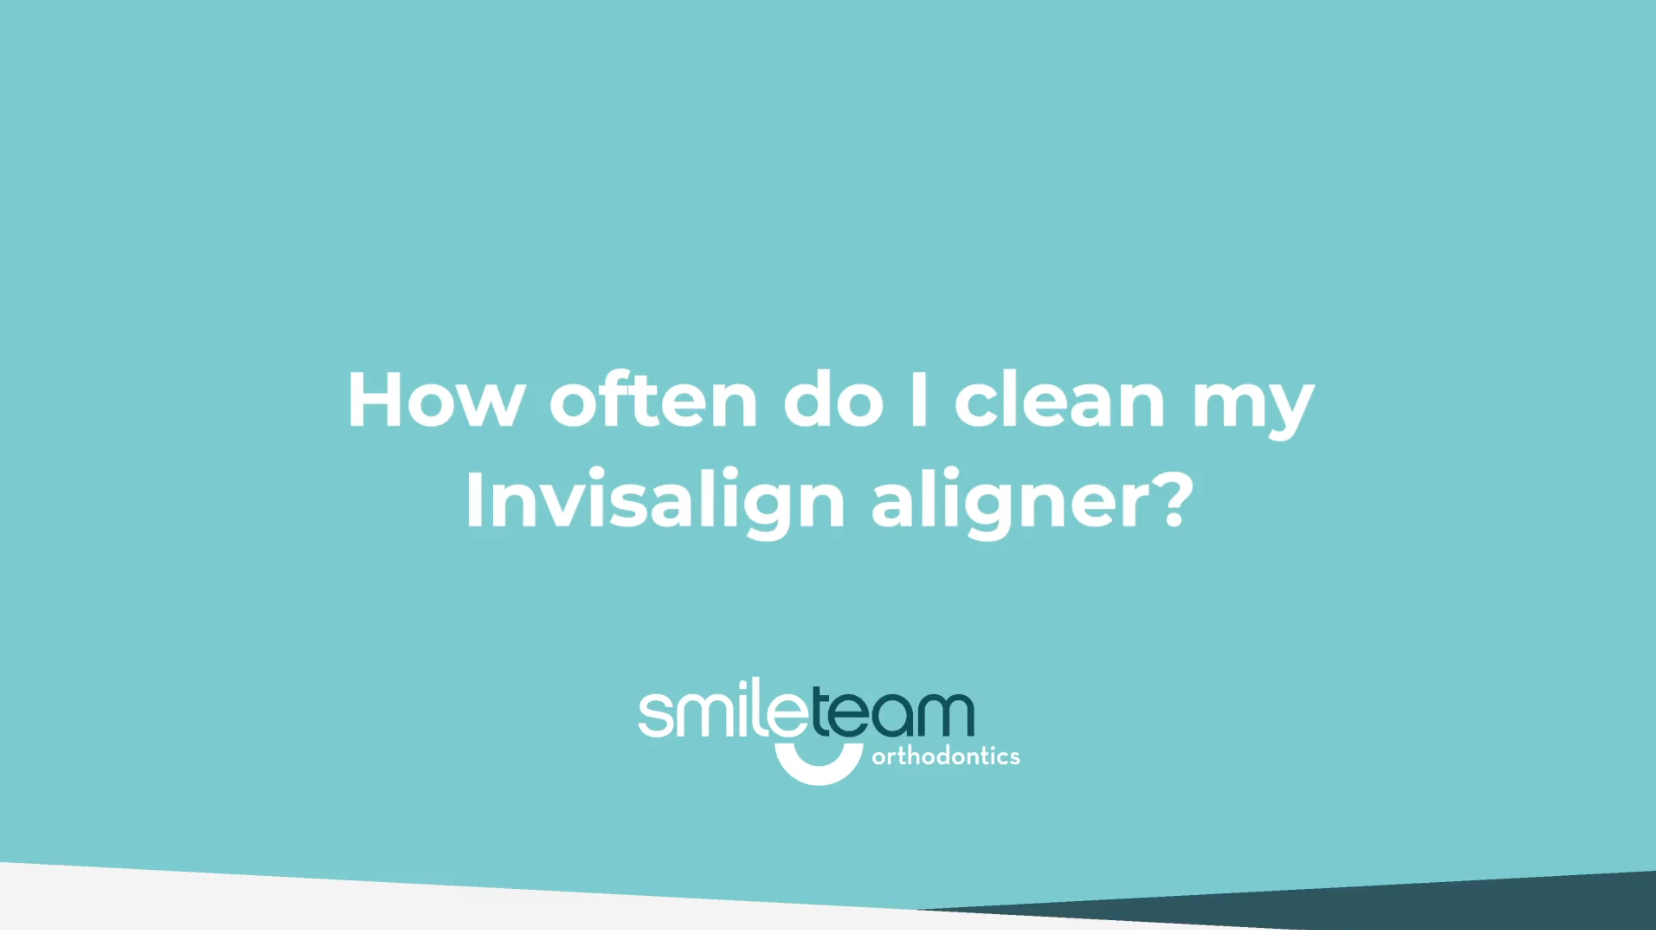 How often do I clean my Invislign aligner?